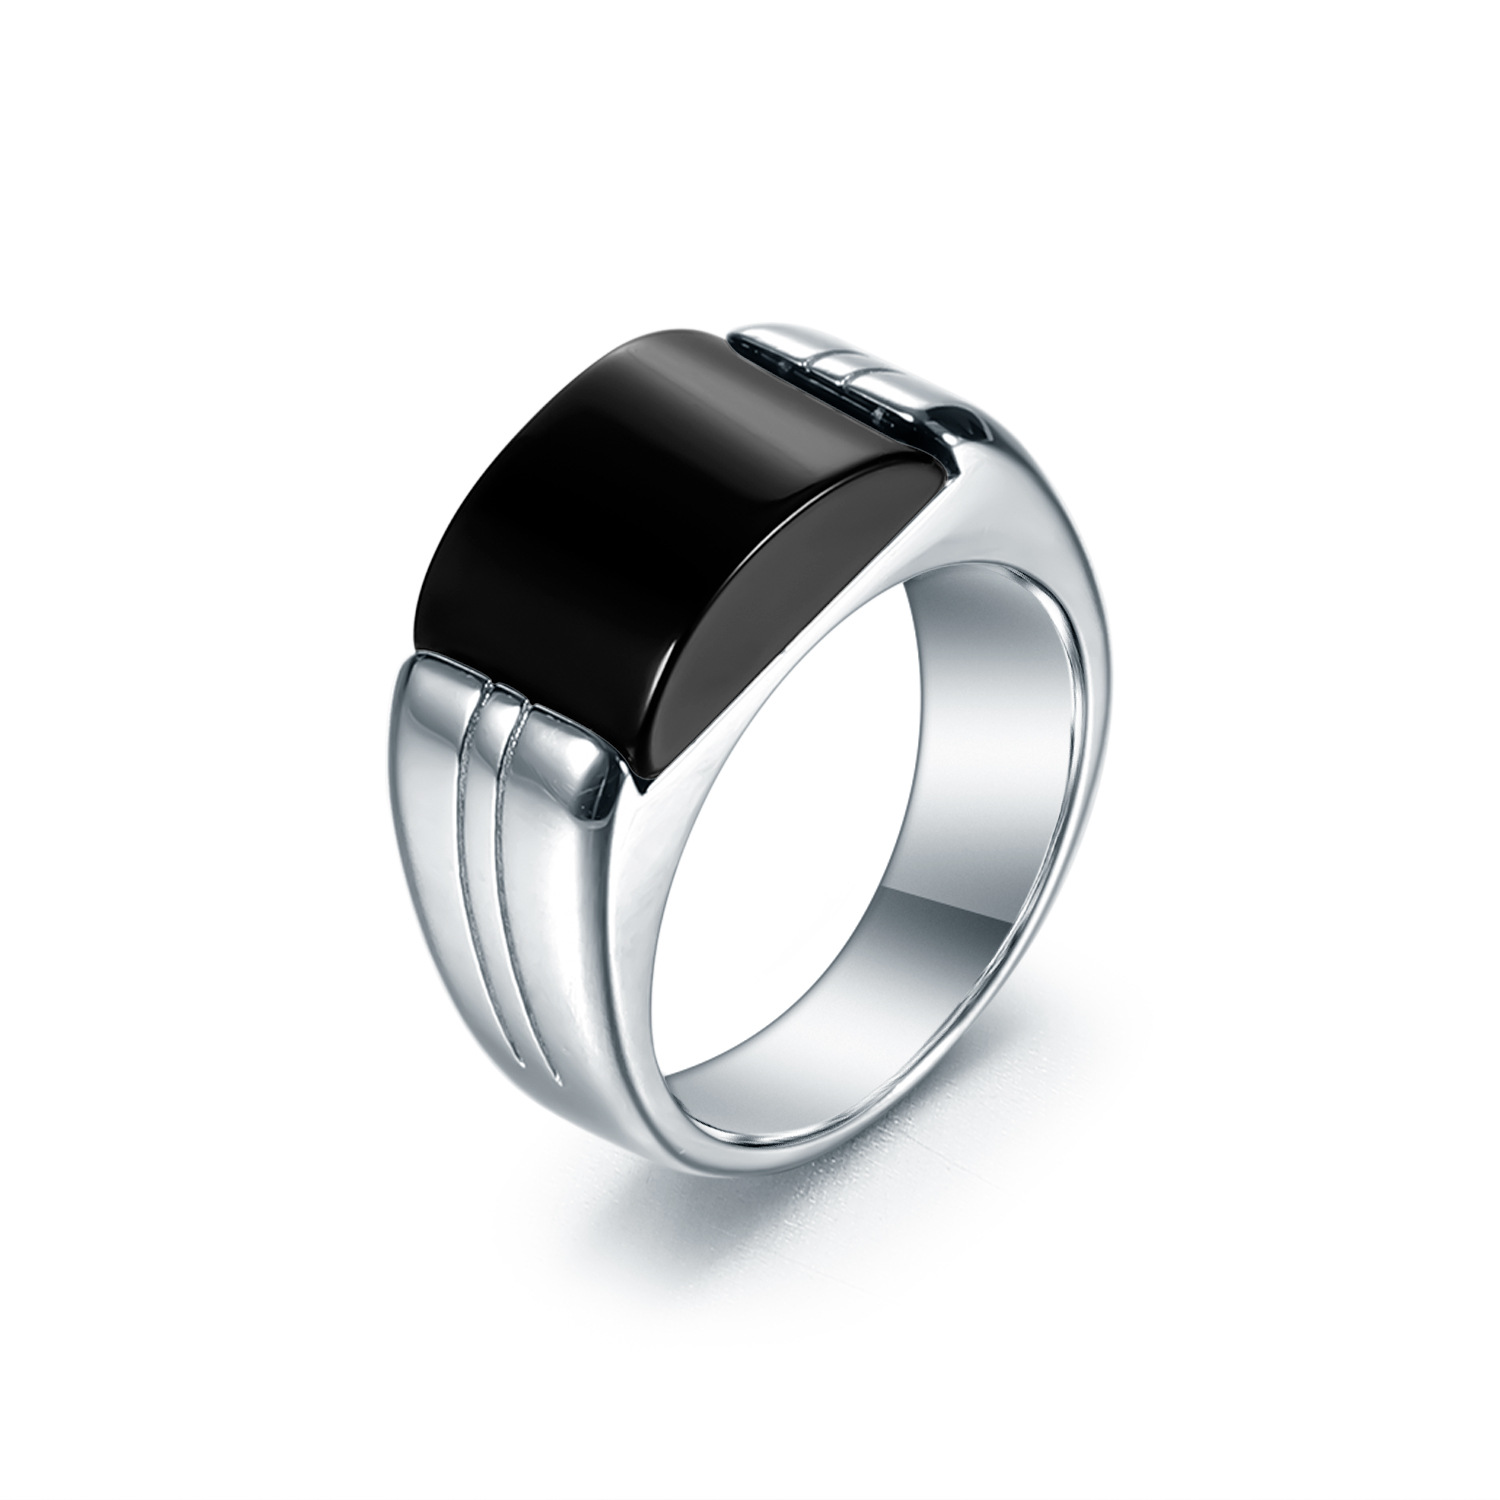 Designer Style Natural Black Onyx/Malachite Men's S925 Sterling Silver Ring-BlingRunway